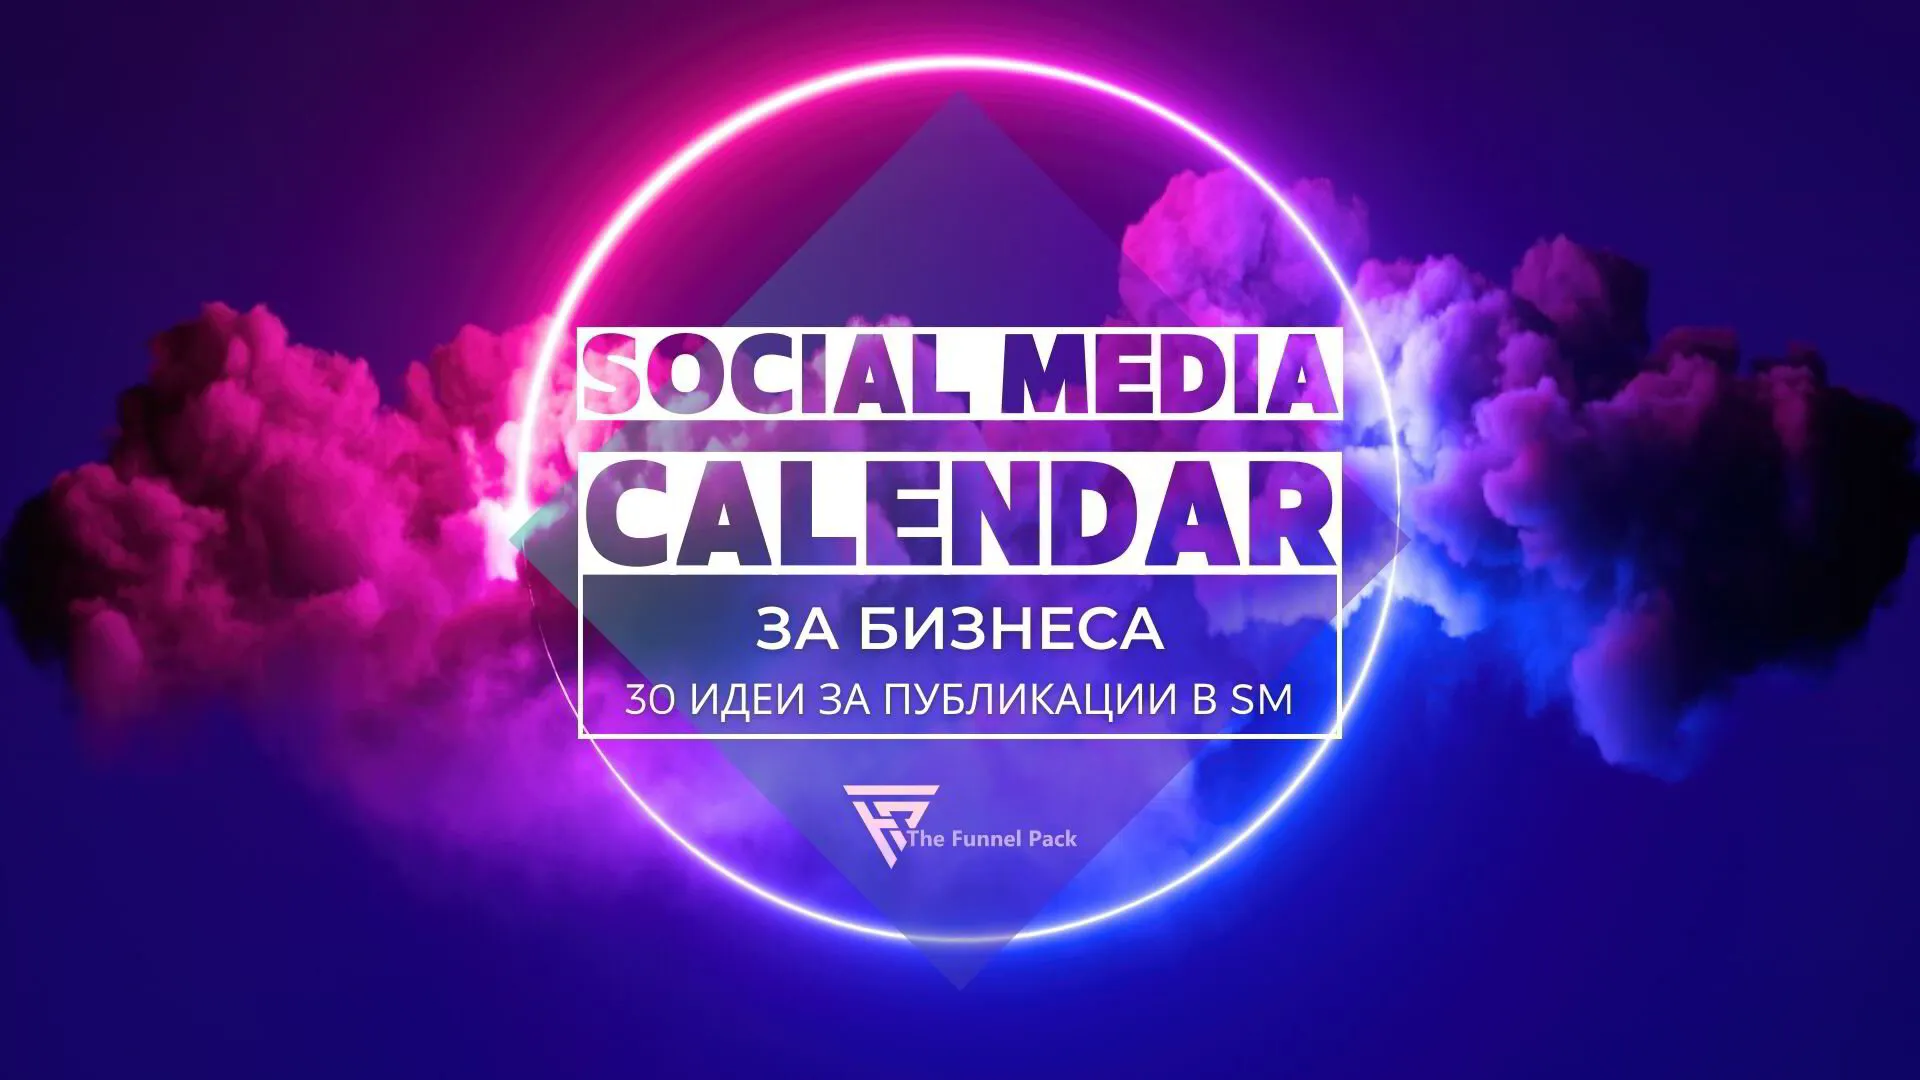 Social Media Calendar за бизнеса - 30 идеи